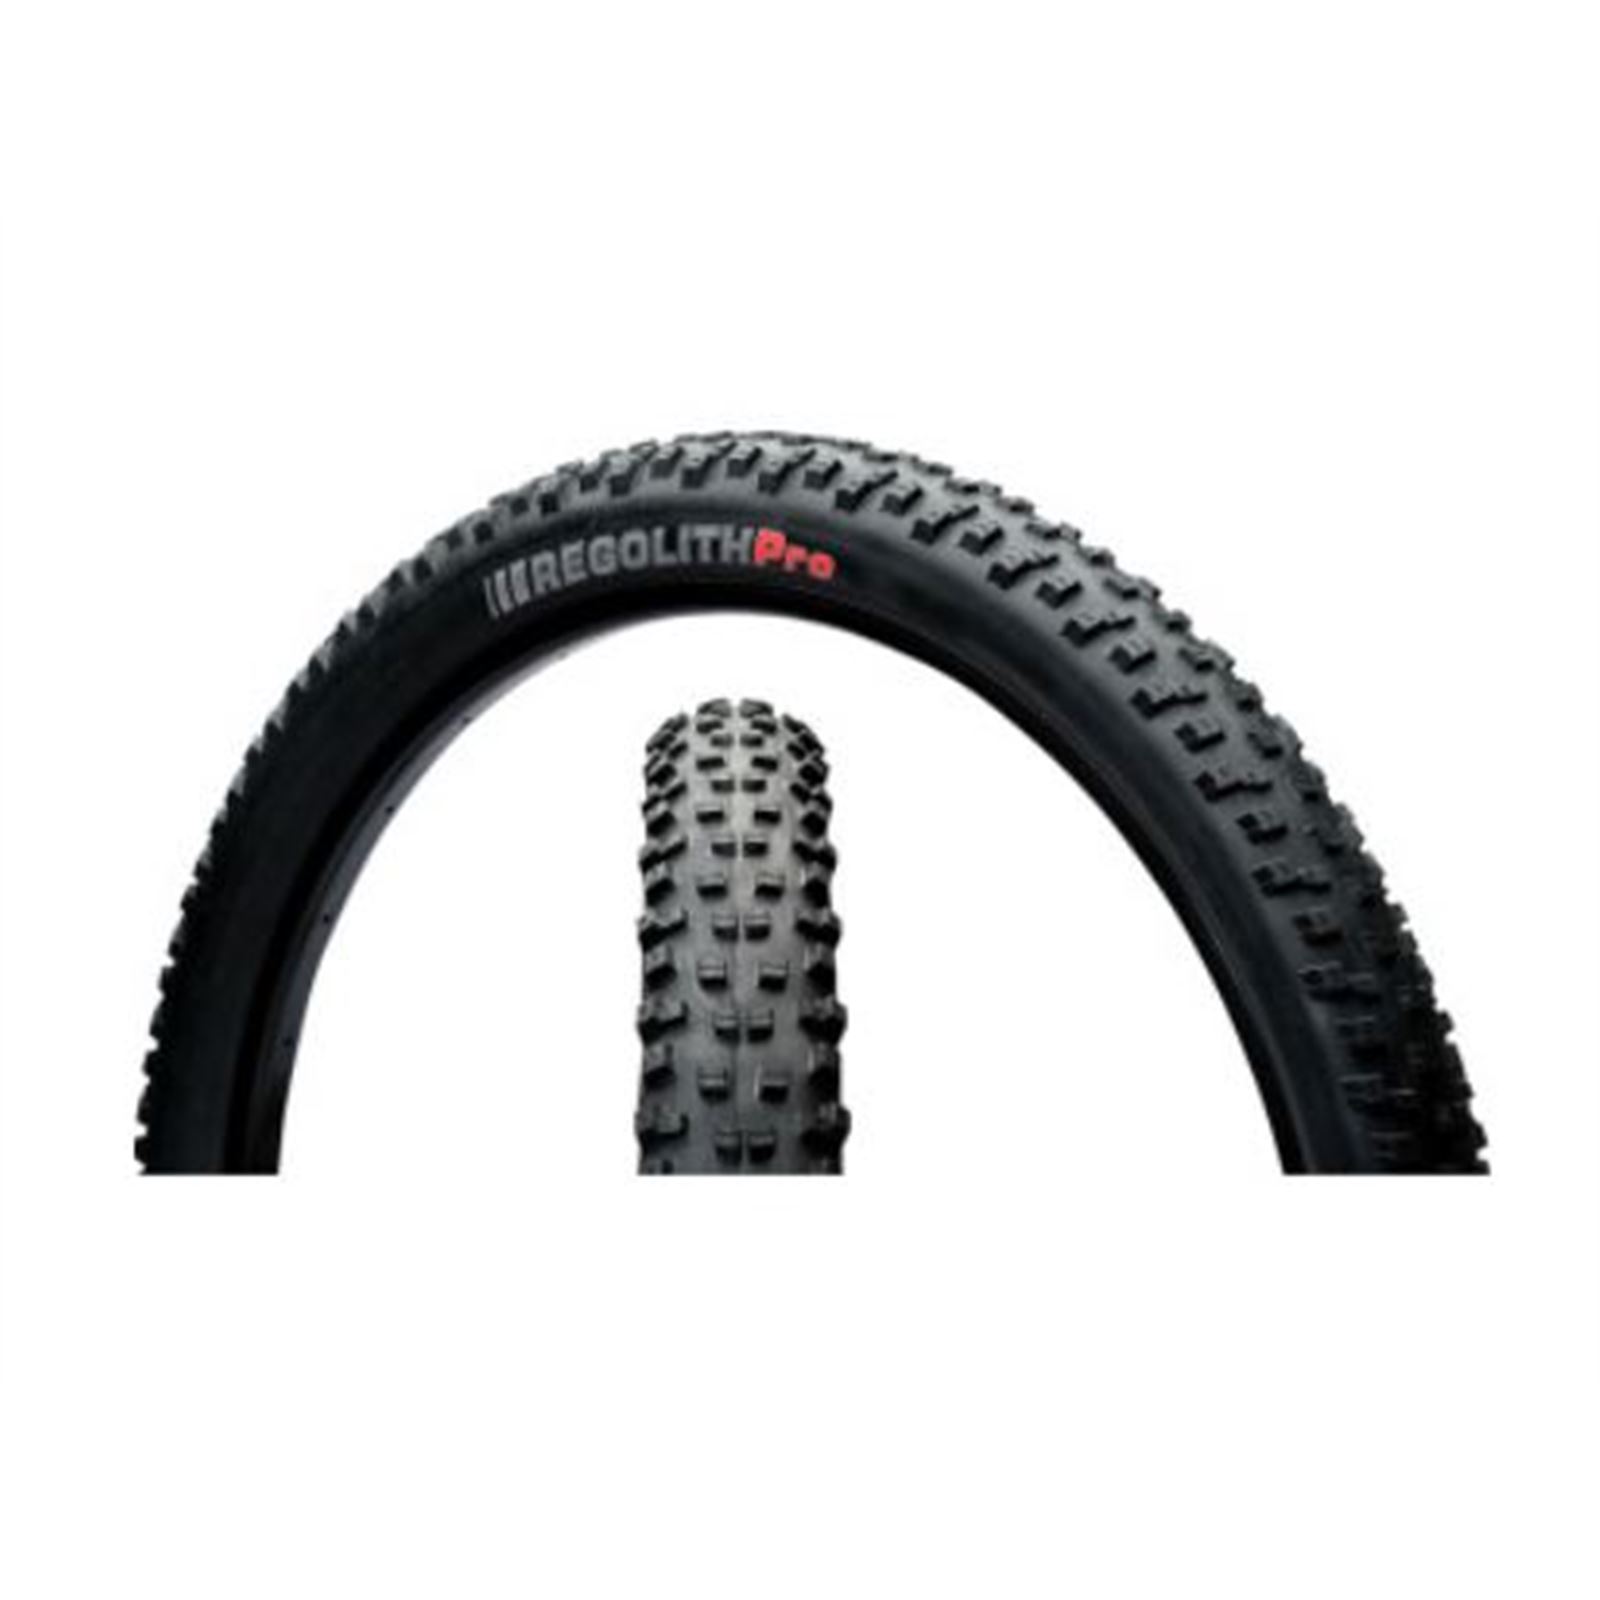 Kenda Regolith Pro Tire - 27.5x2.6